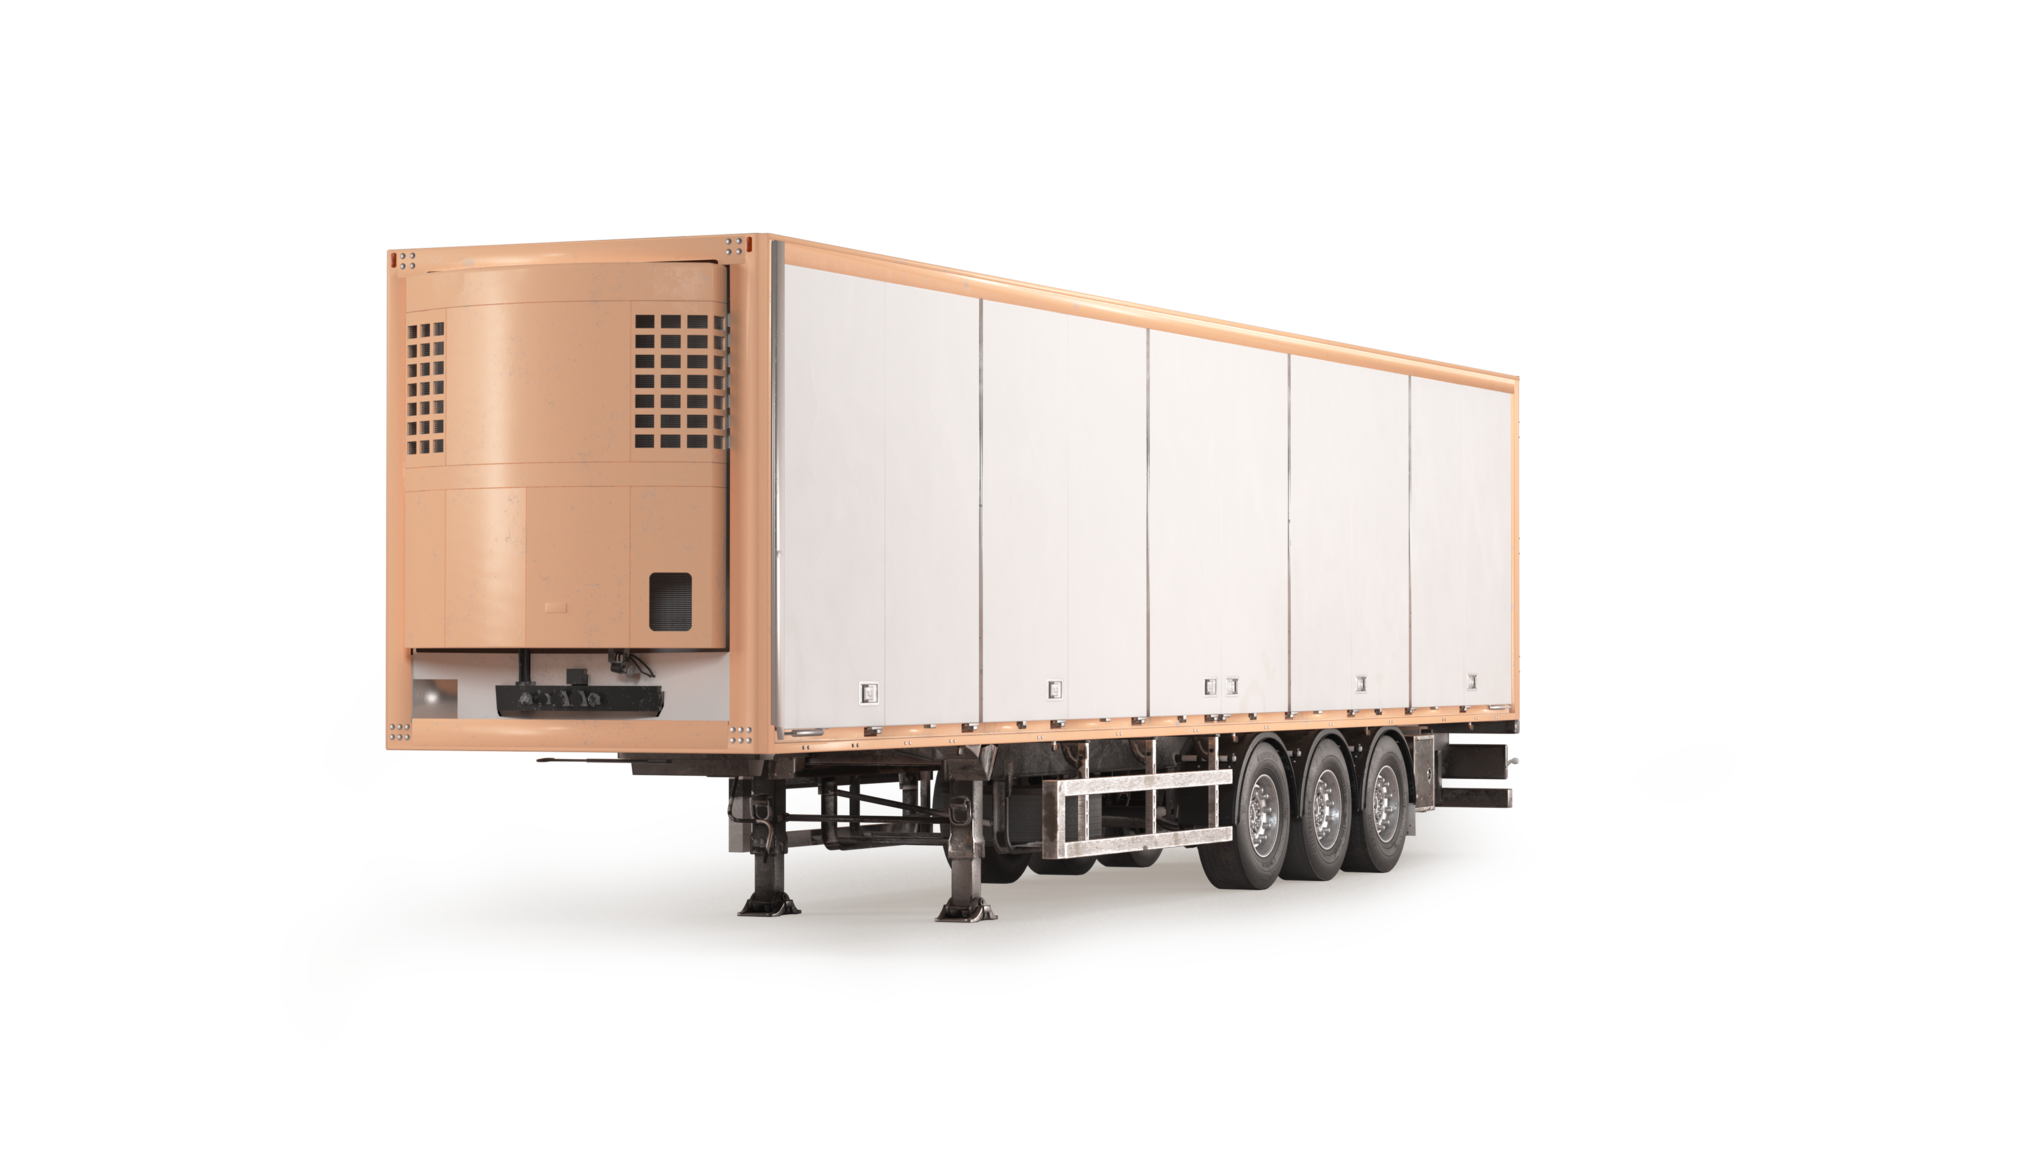 Sættevognsforsikring dækker din sættevogn eller trailer mod skader og uheld, når den er koblet til multitrækker eller lastbil